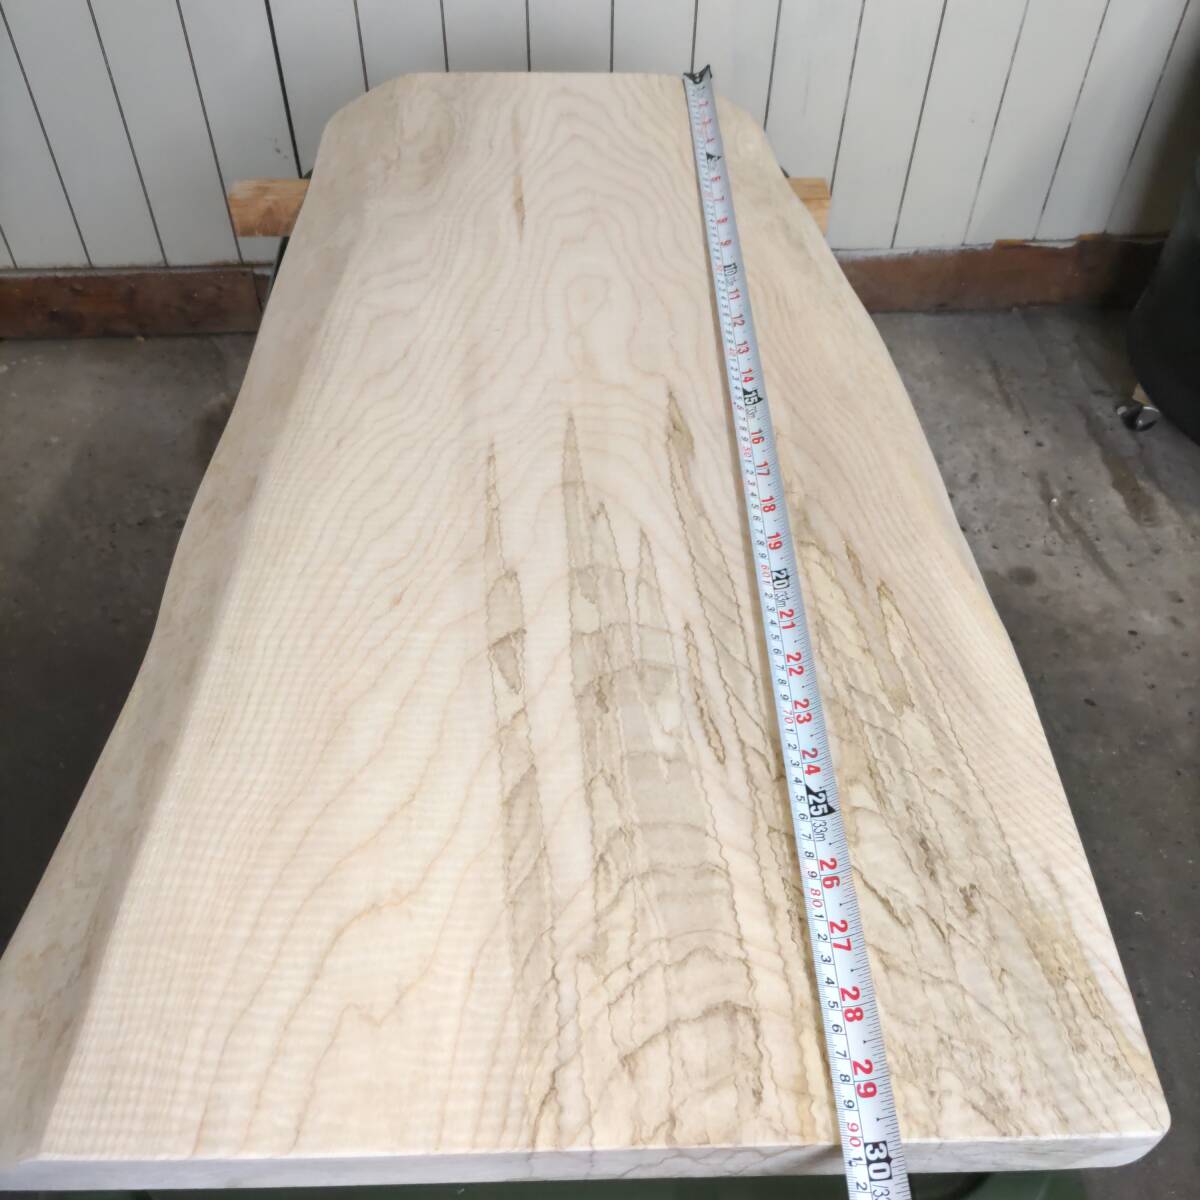 イタヤカエデ 楓 約長900幅380〜500厚45ミリ 製材後約半年 耳付き板 一枚板 天然木 無垢 未乾燥 花台 多肉棚 テーブル板の画像5